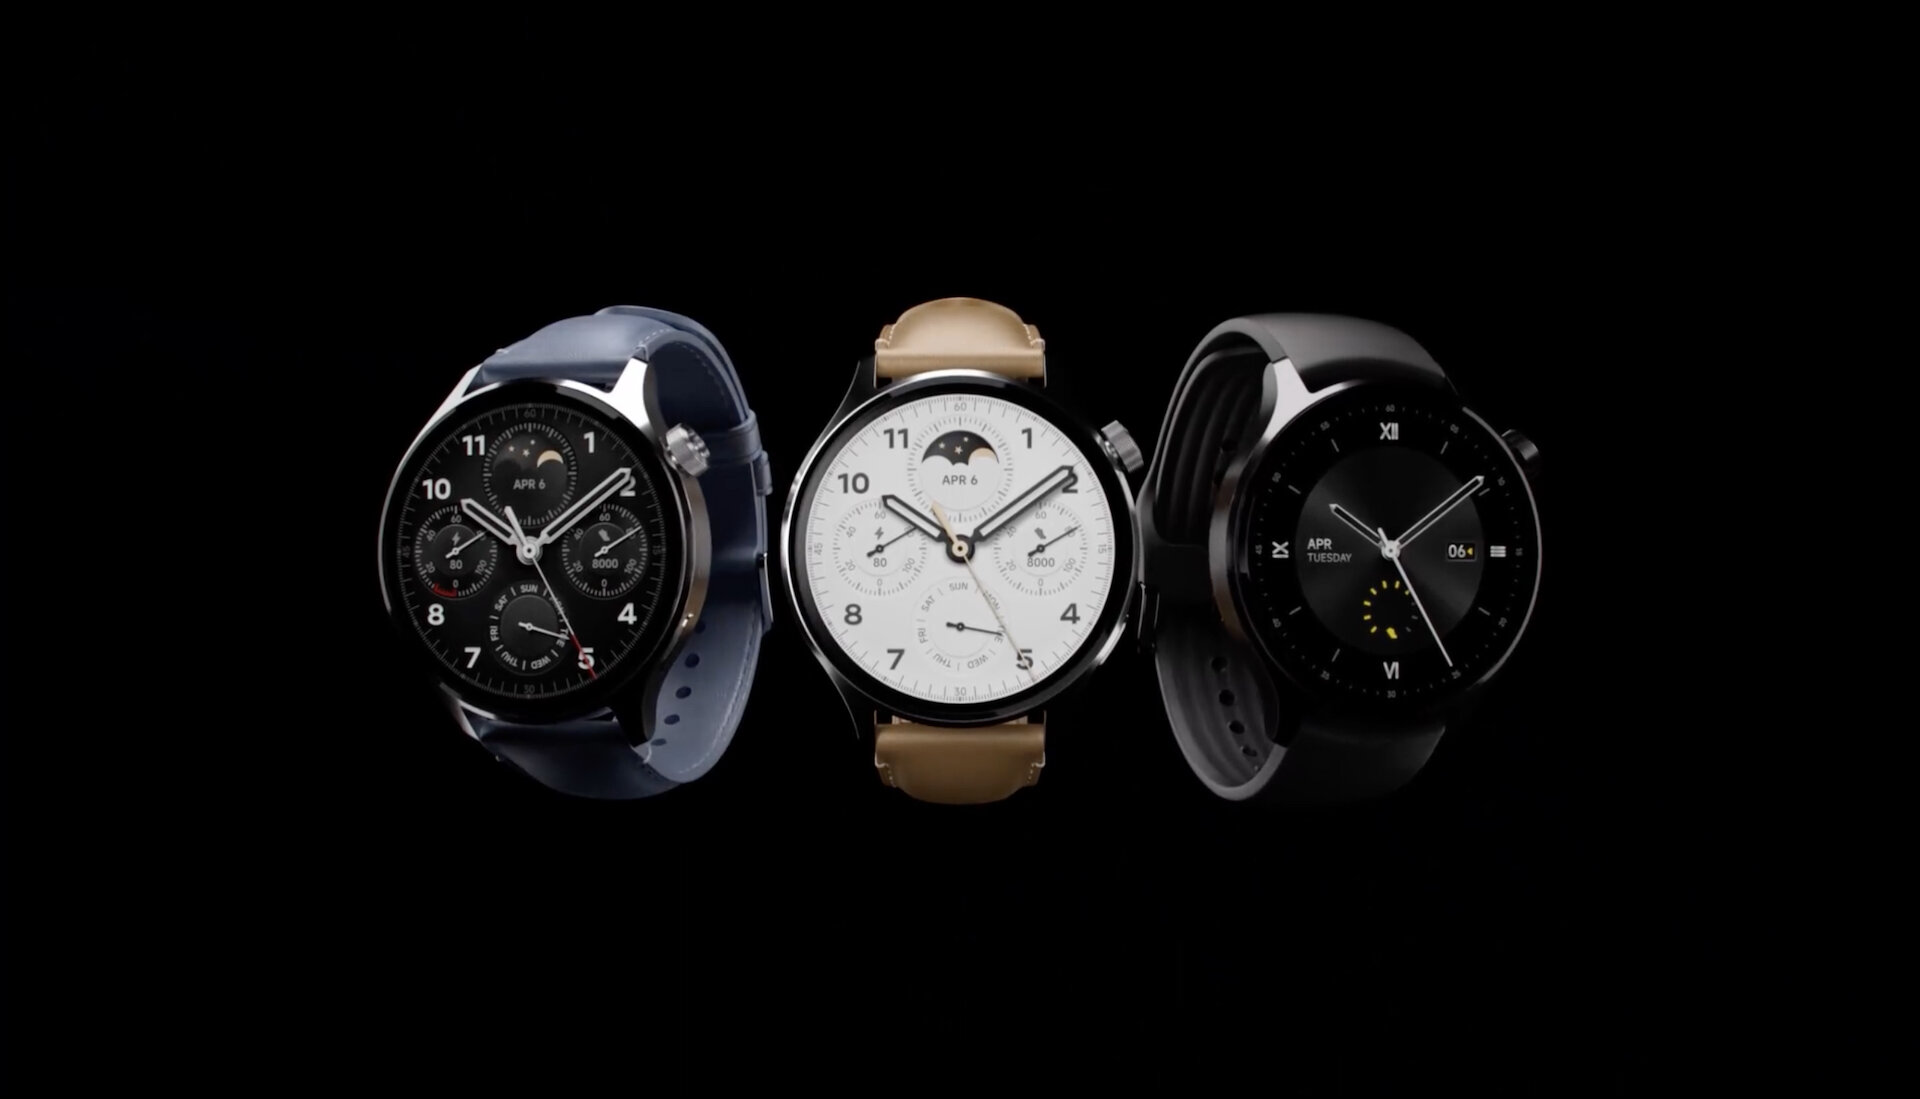 Xiaomi представила свои лучшие умные часы Watch S1 Pro. Чем они интересны